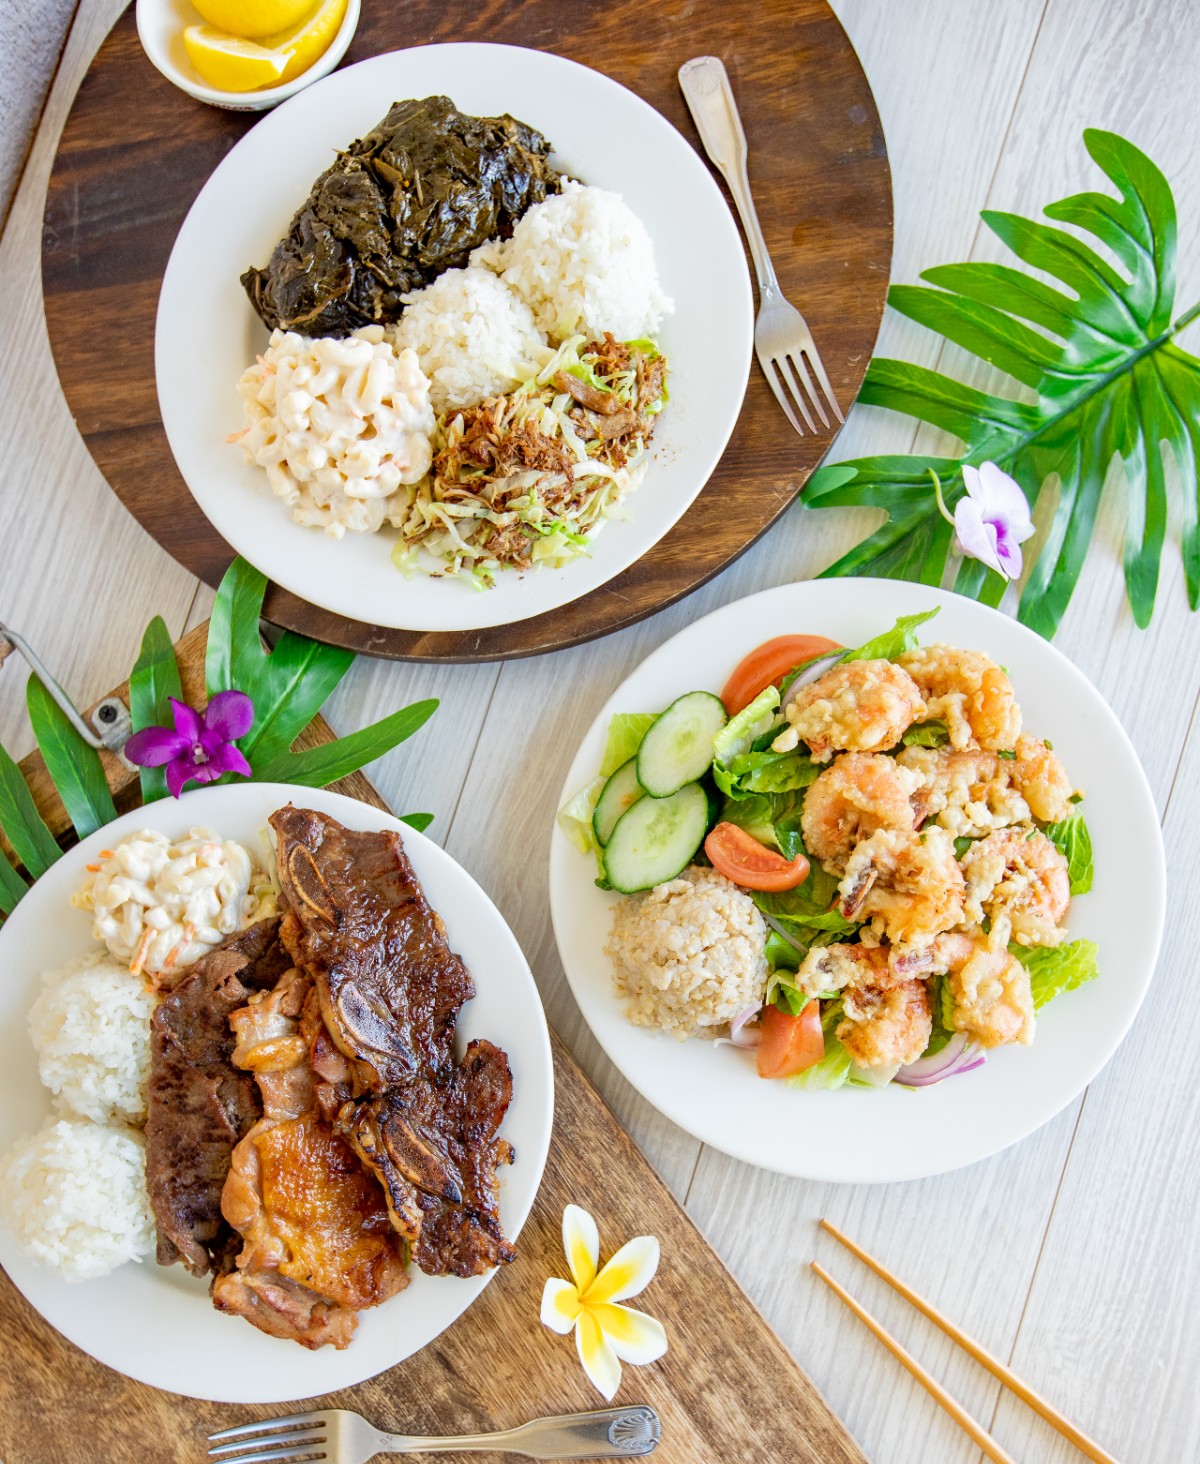 L&L Hawaiian Barbecue plates